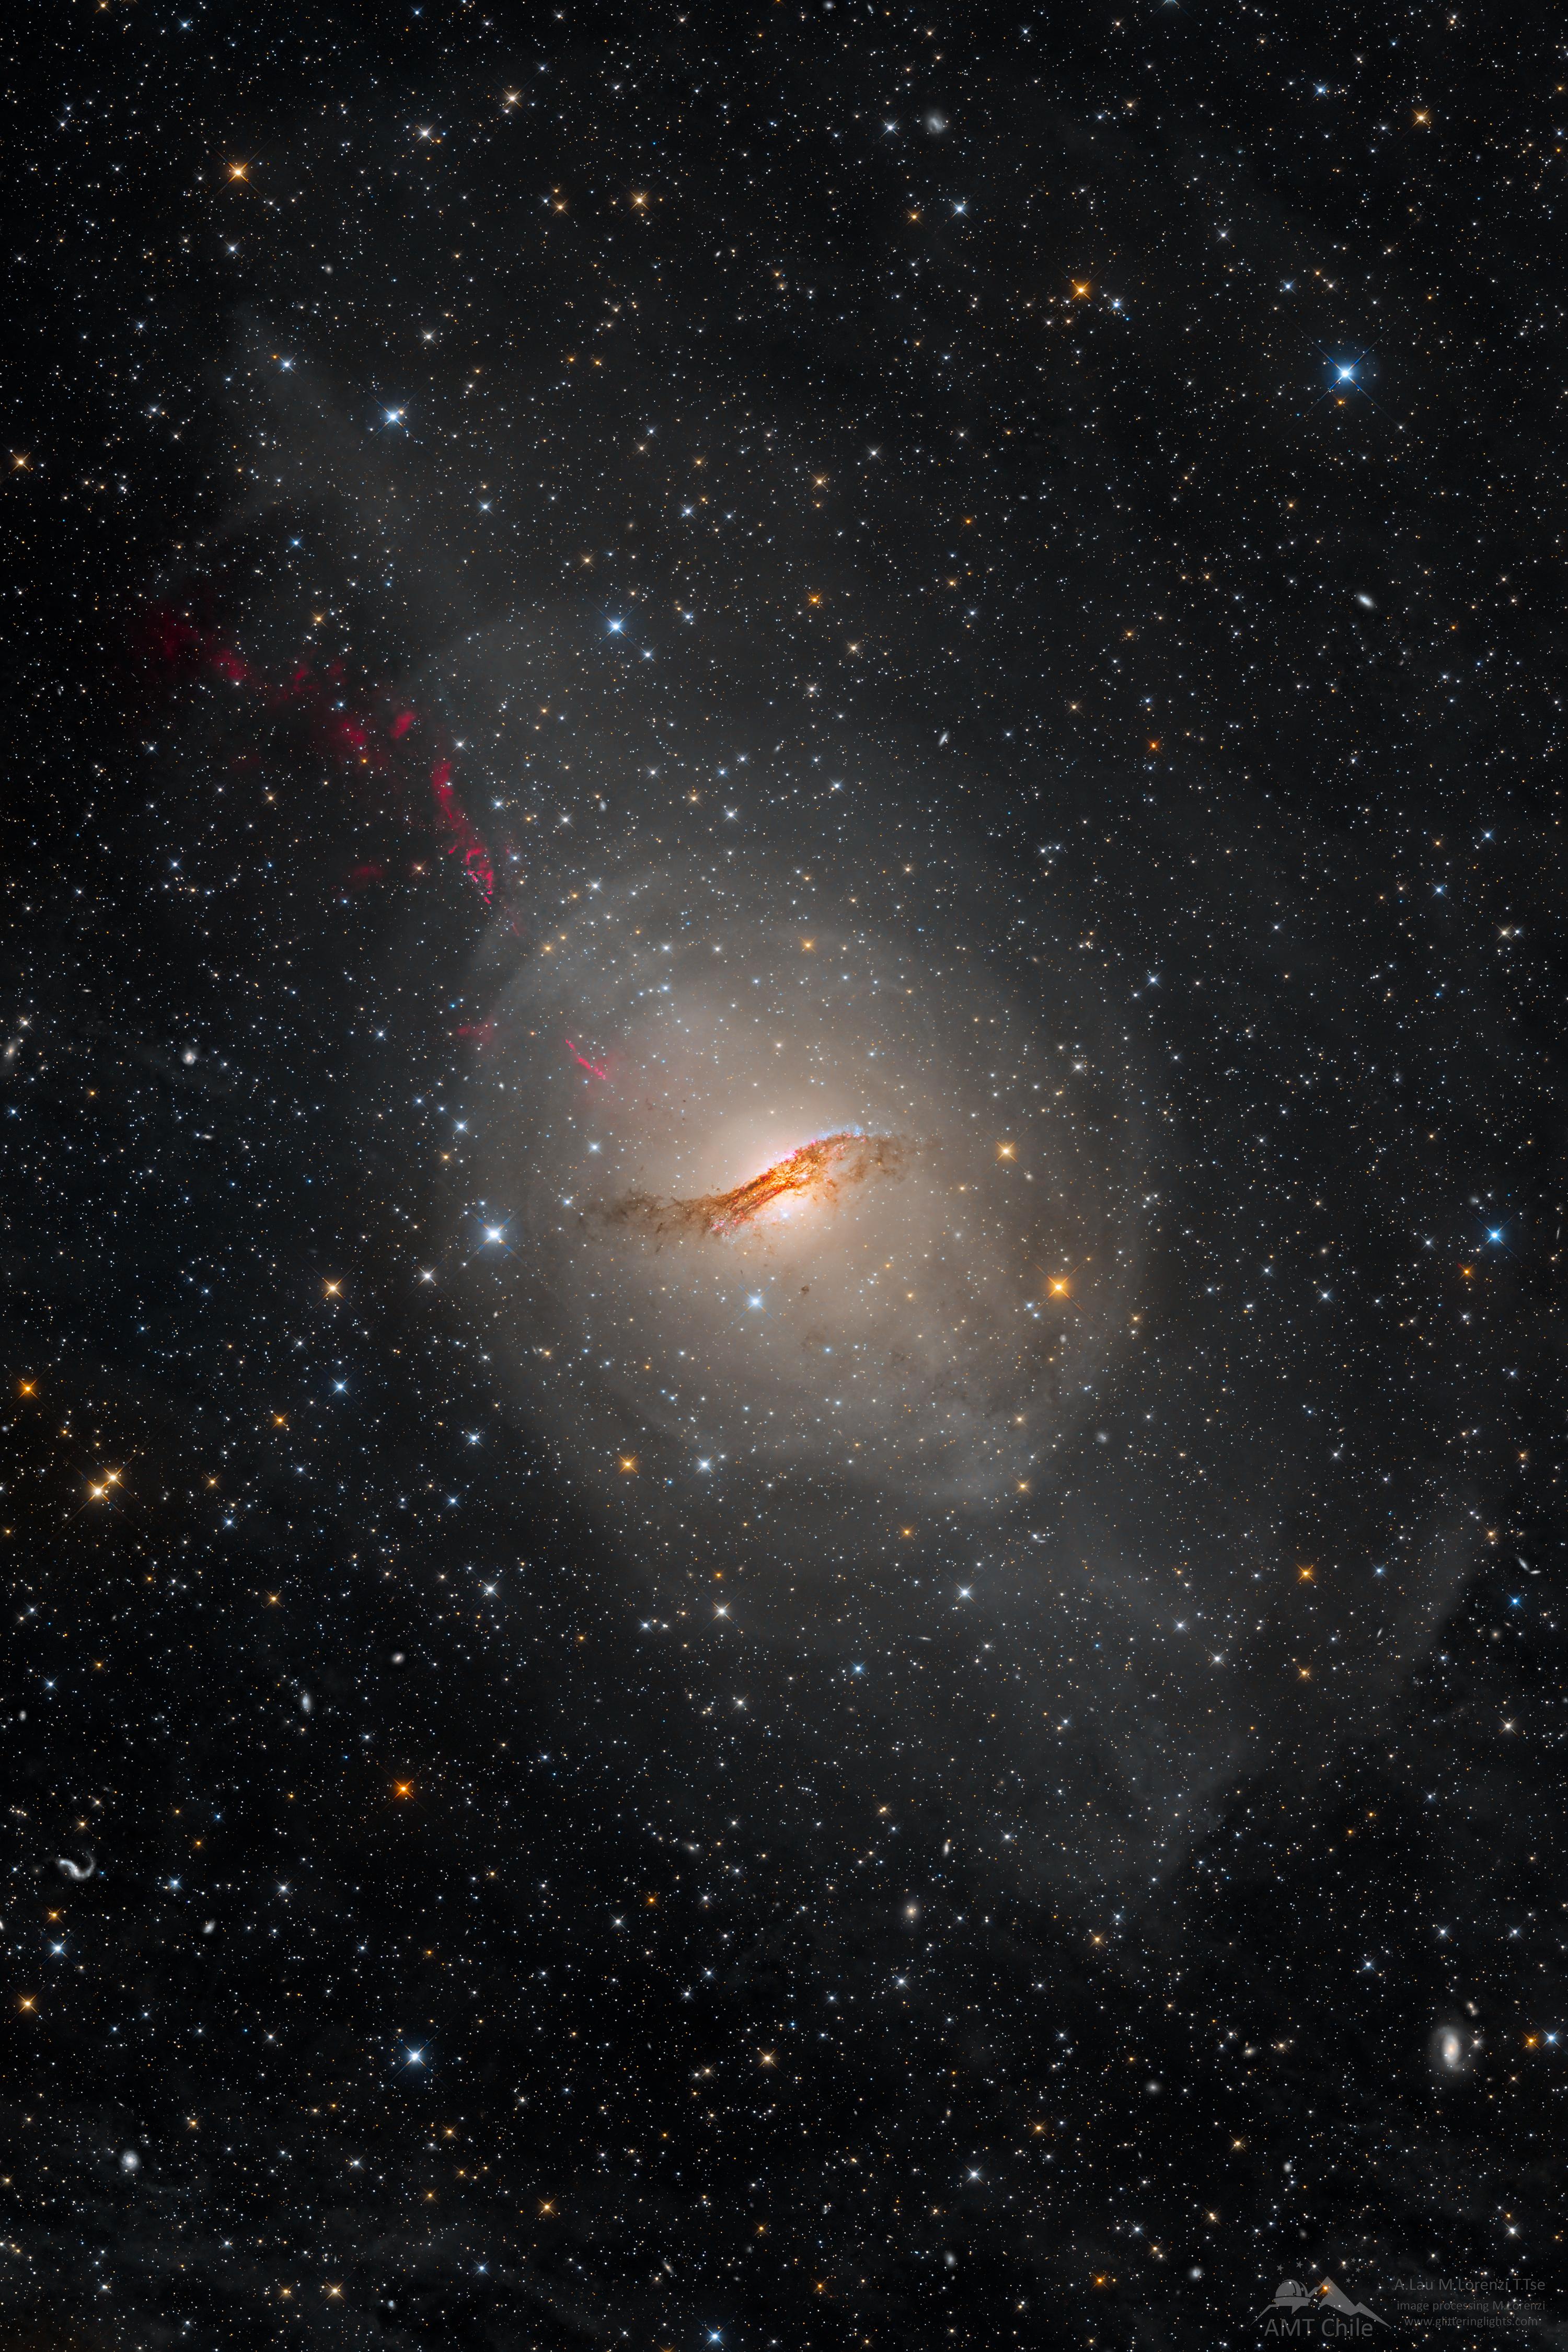 صورة طويلة المدّة للمجرّة غير الاعتياديّة "قنطورس أ". تبدو المجرّة كشكل بيضوي مضيء مع مسار غبارٍ مُعتم مُعقّد يجري عبر مركزها. يحيط حقل نجومٍ بالمجرّة.